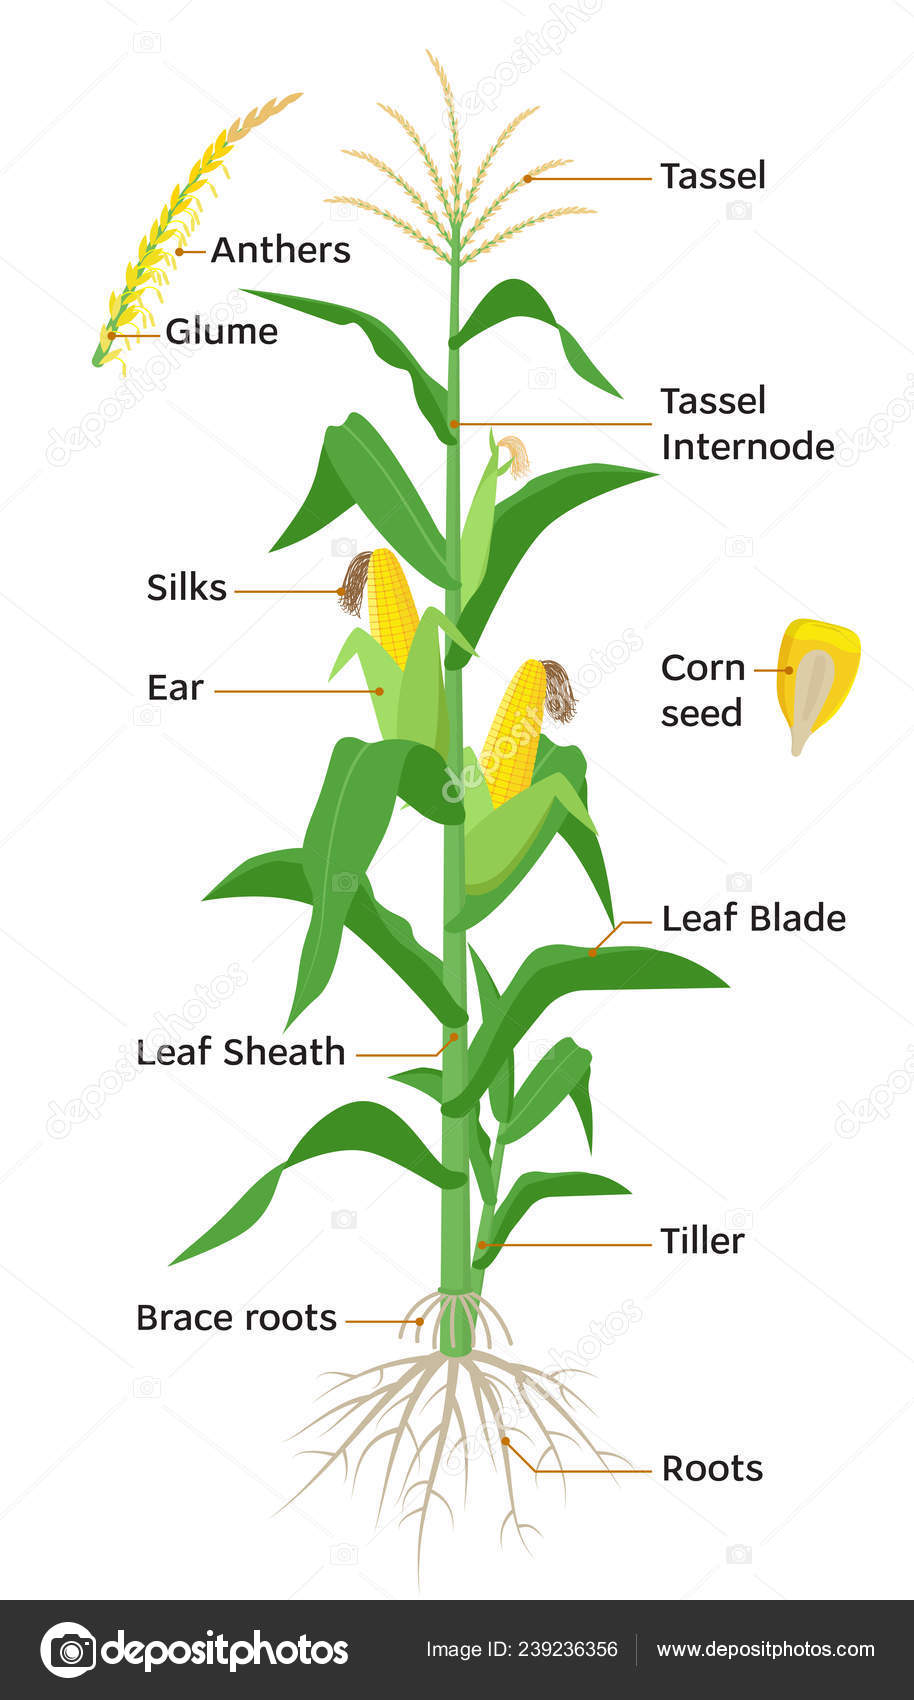 Maispflanzendiagramm, infografische Elemente mit Maispflanzenteilen ...